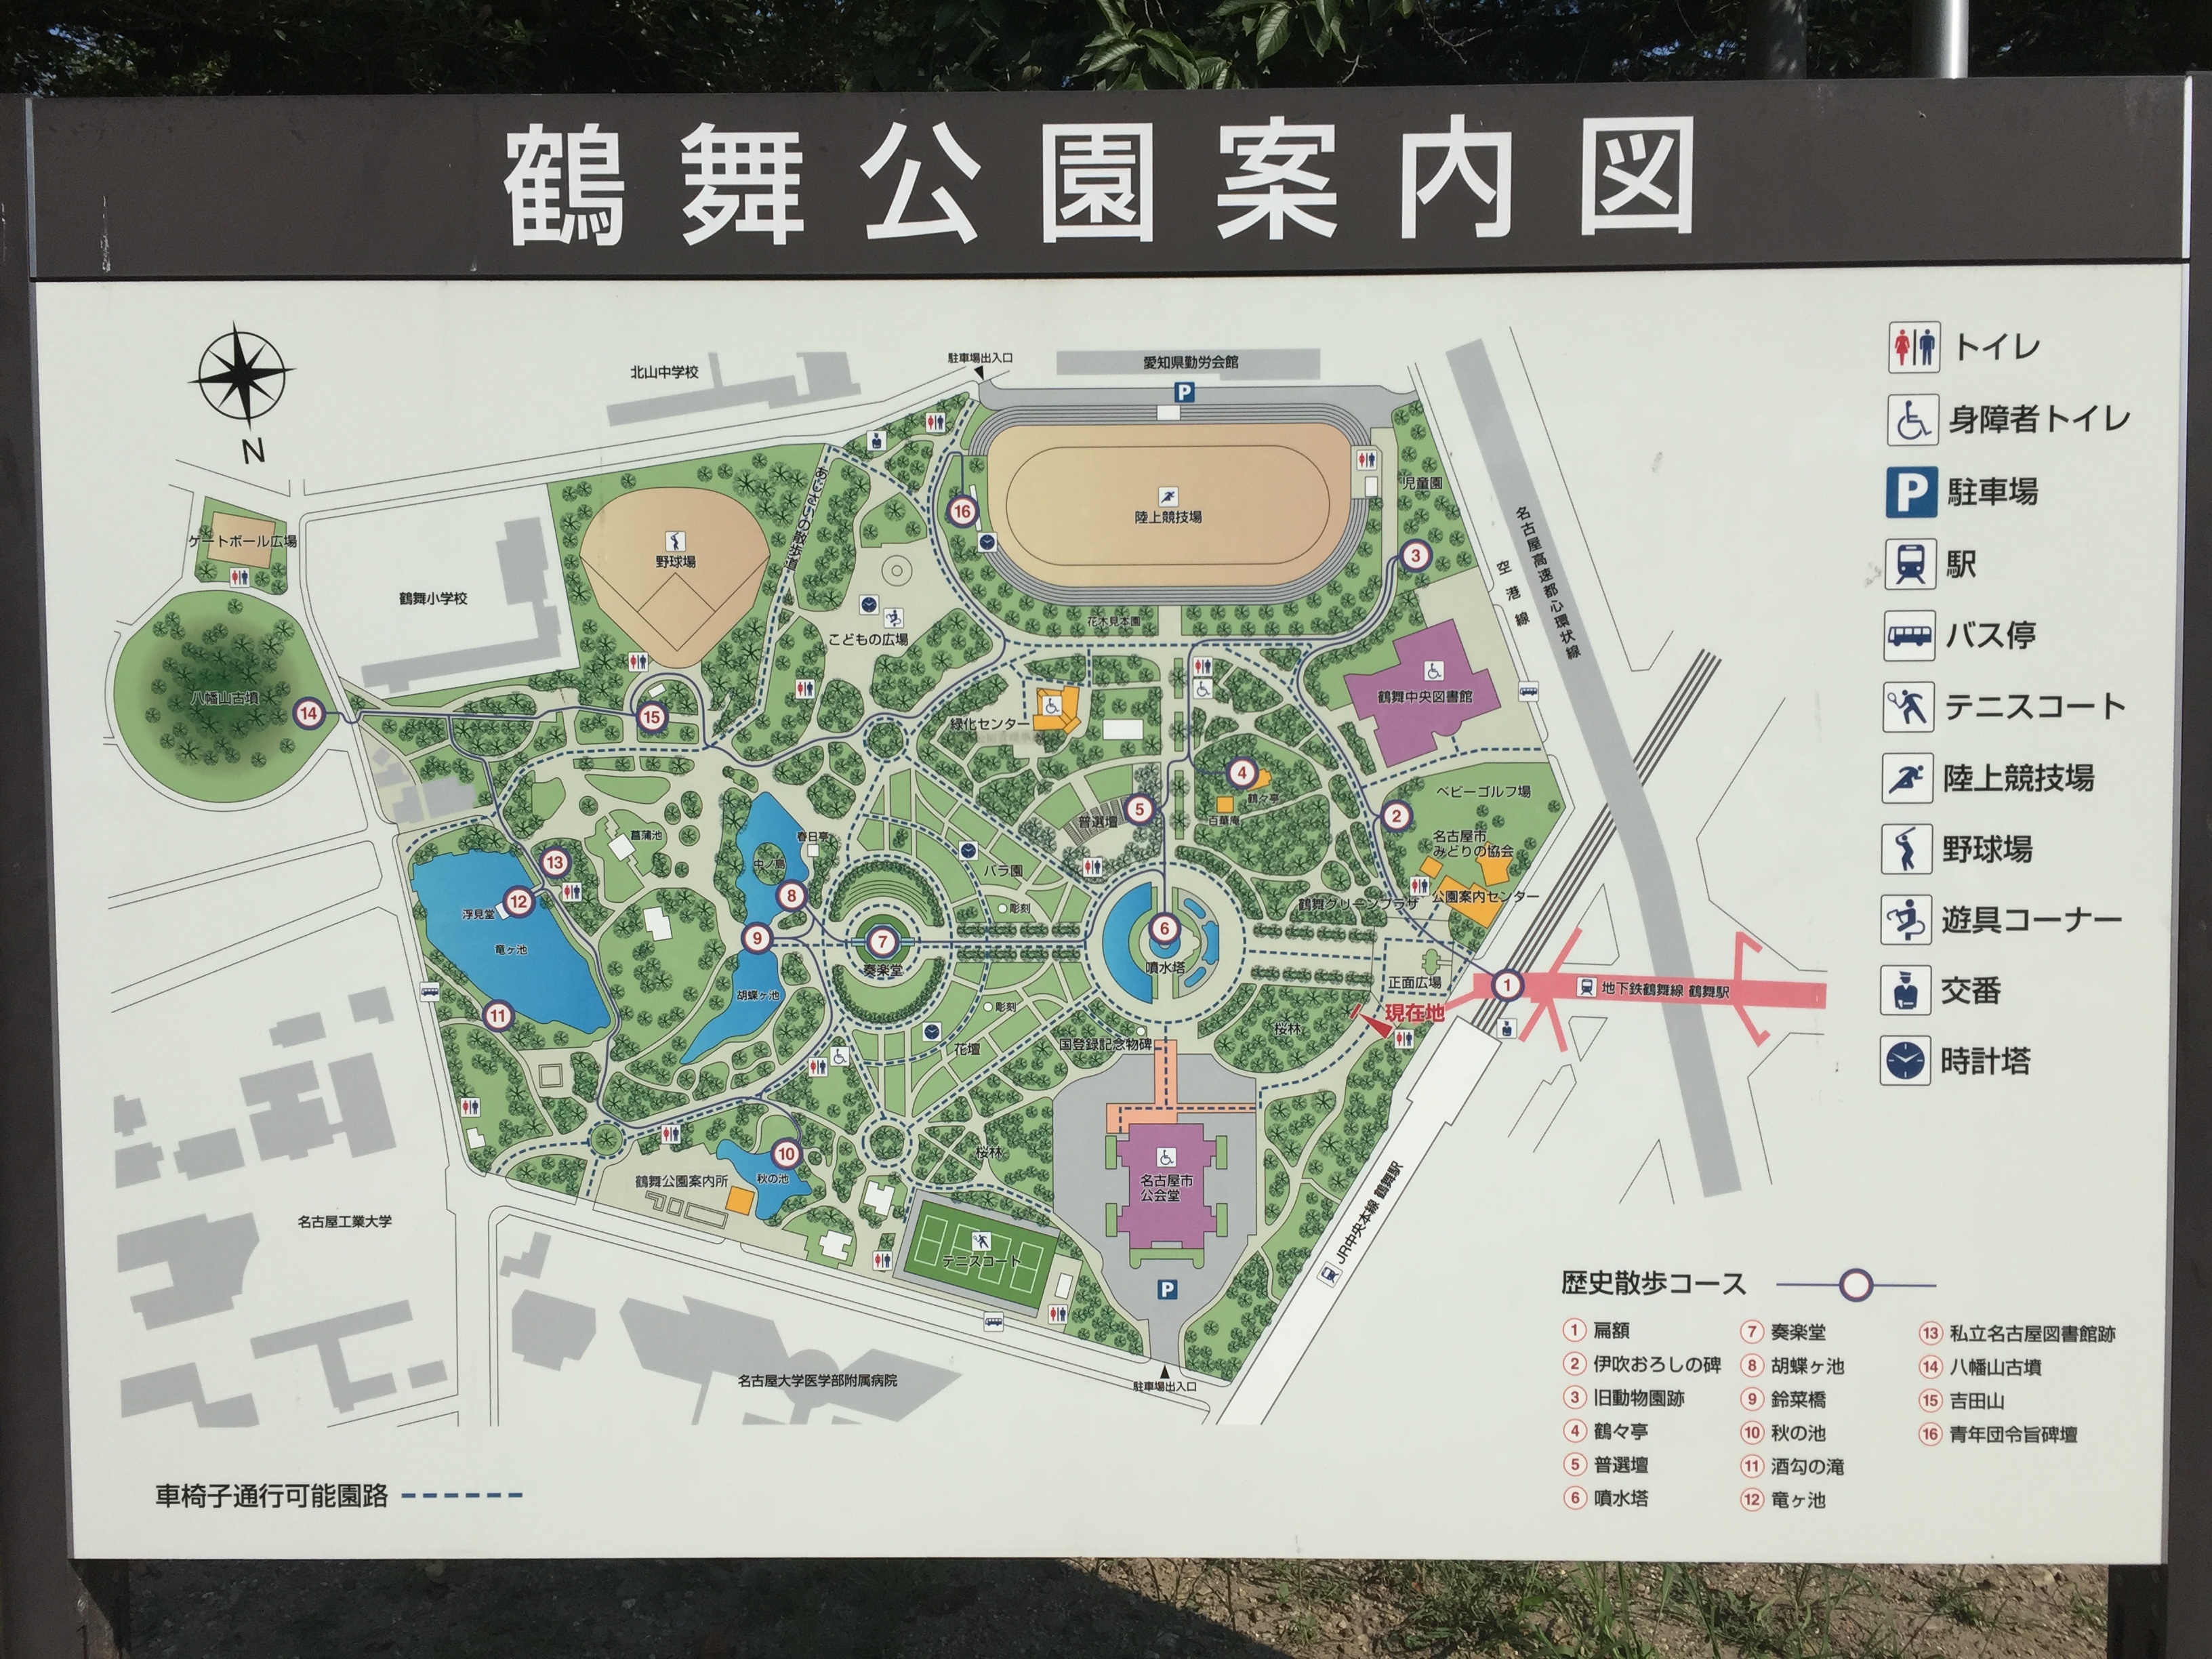 ポケモンgo 名古屋の聖地 鶴舞公園 で息子とカビゴンをゲット じょずブロ